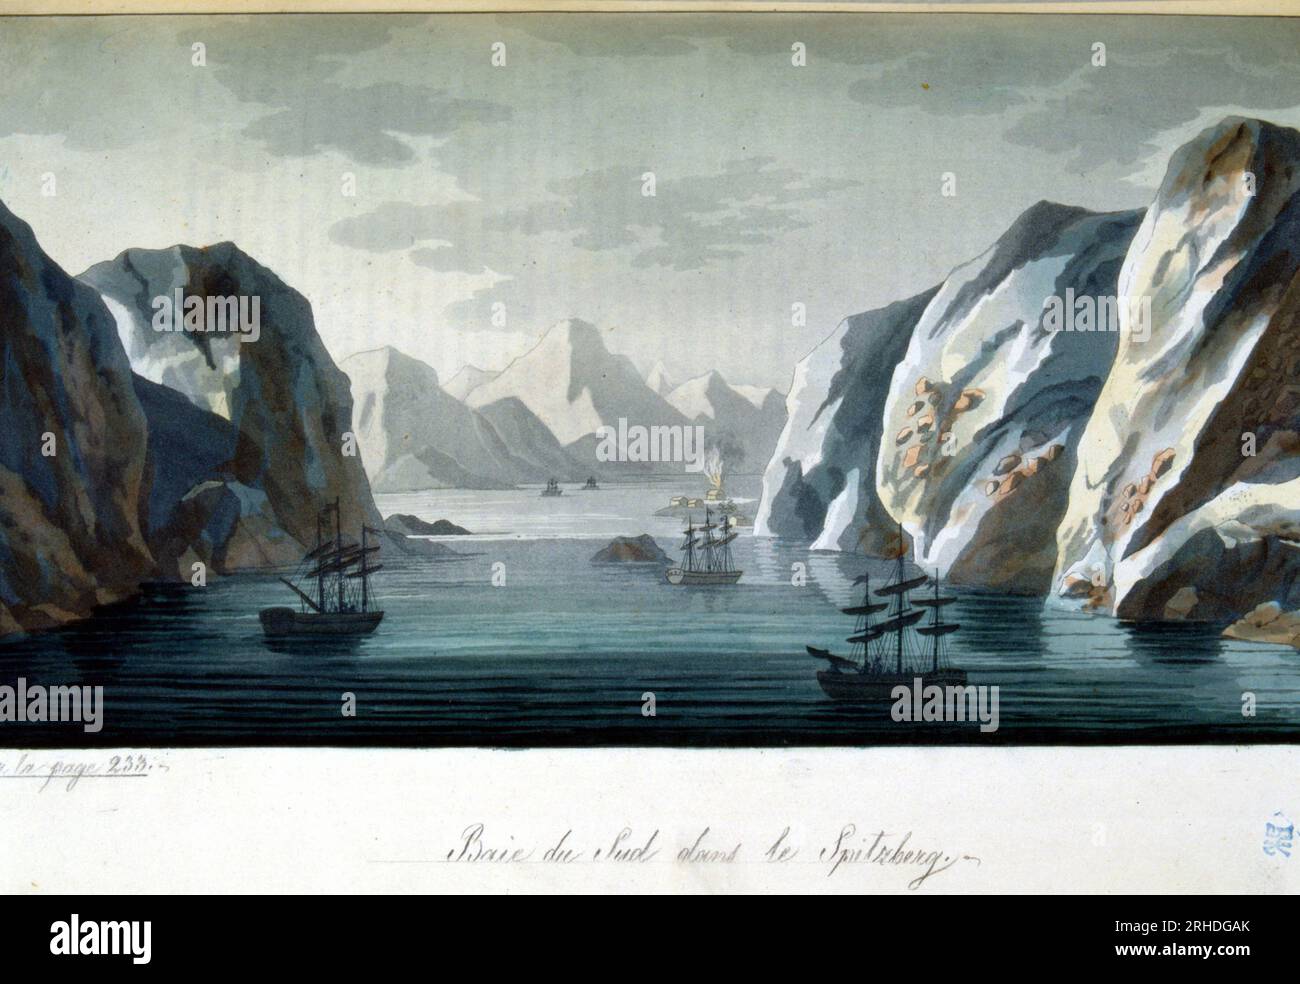 Baie du sud dans le Spitzberg, Norvege - in 'Le costume ancien et modern', par Jules Ferrario, 1819-1820 Stockfoto